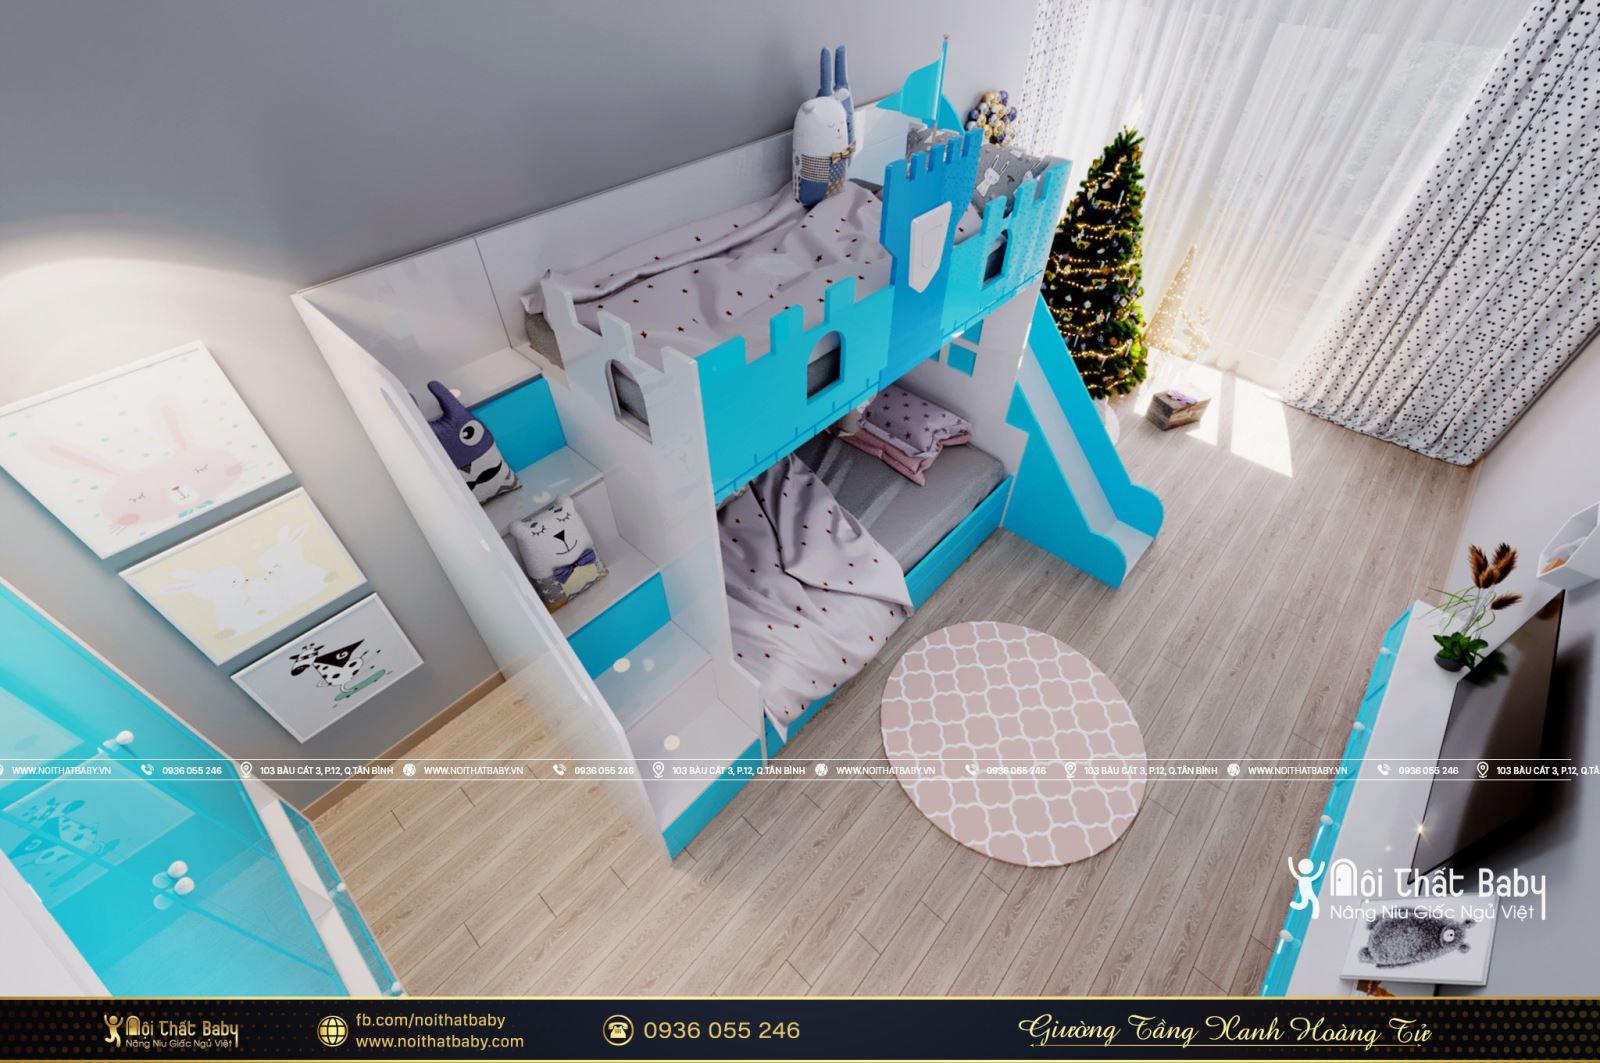 Mẫu giường tầng xanh hoàng tử năm 2021